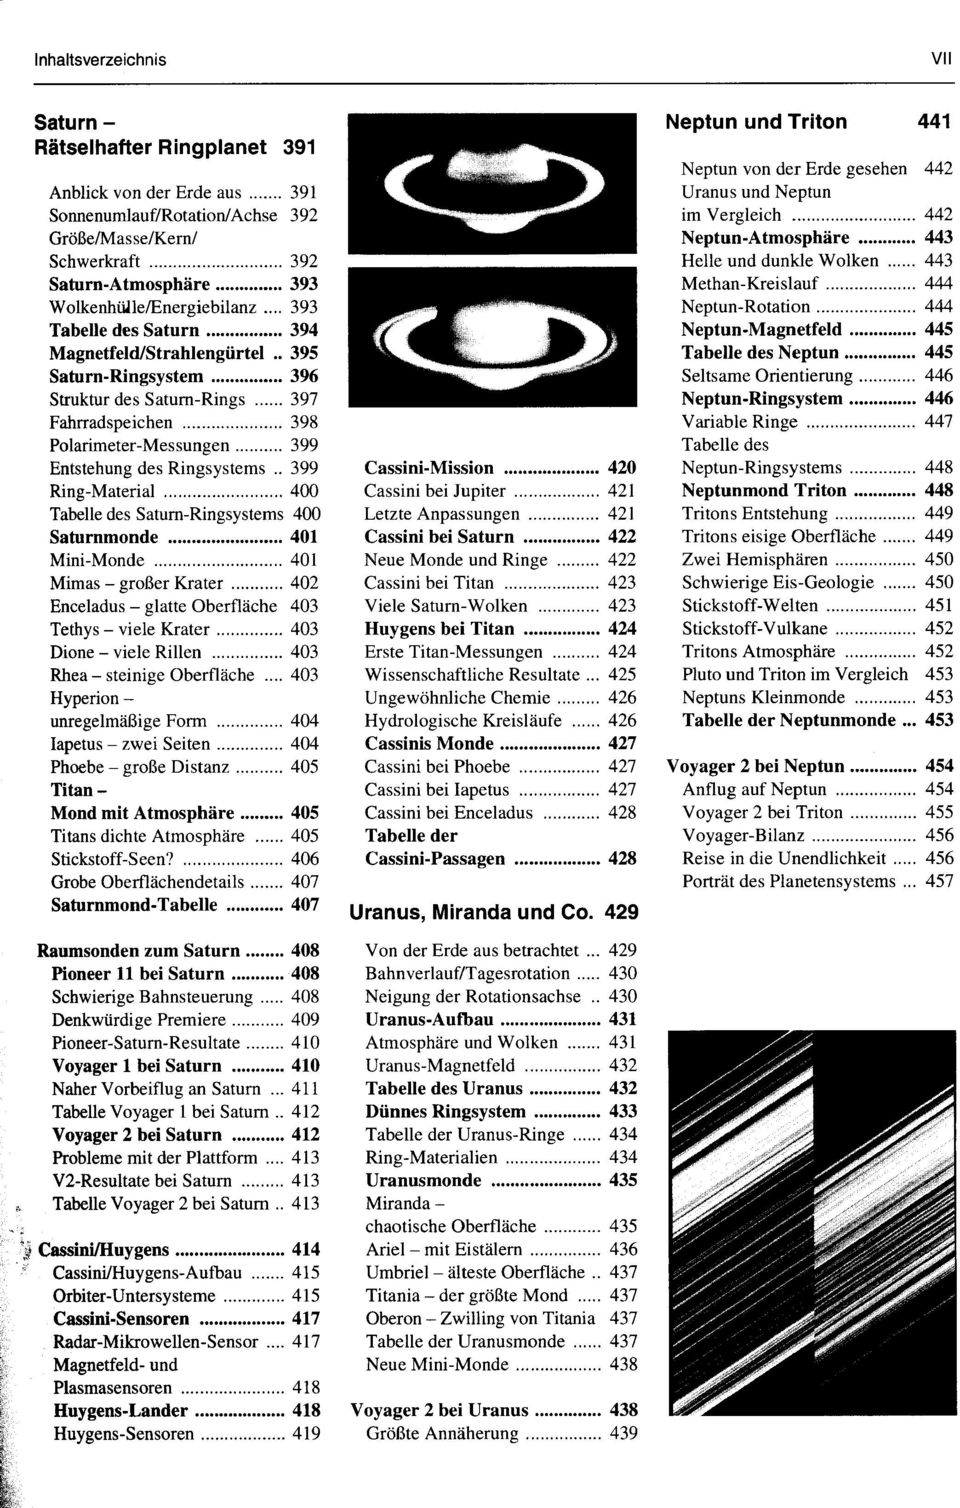 . 399 Ring-Material 400 Tabelle des Saturn-Ringsystems 400 Saturnmonde 401 Mini-Monde 401 Mimas - großer Krater 402 Enceladus - glatte Oberfläche 403 Tethys - viele Krater 403 Dione - viele Rillen